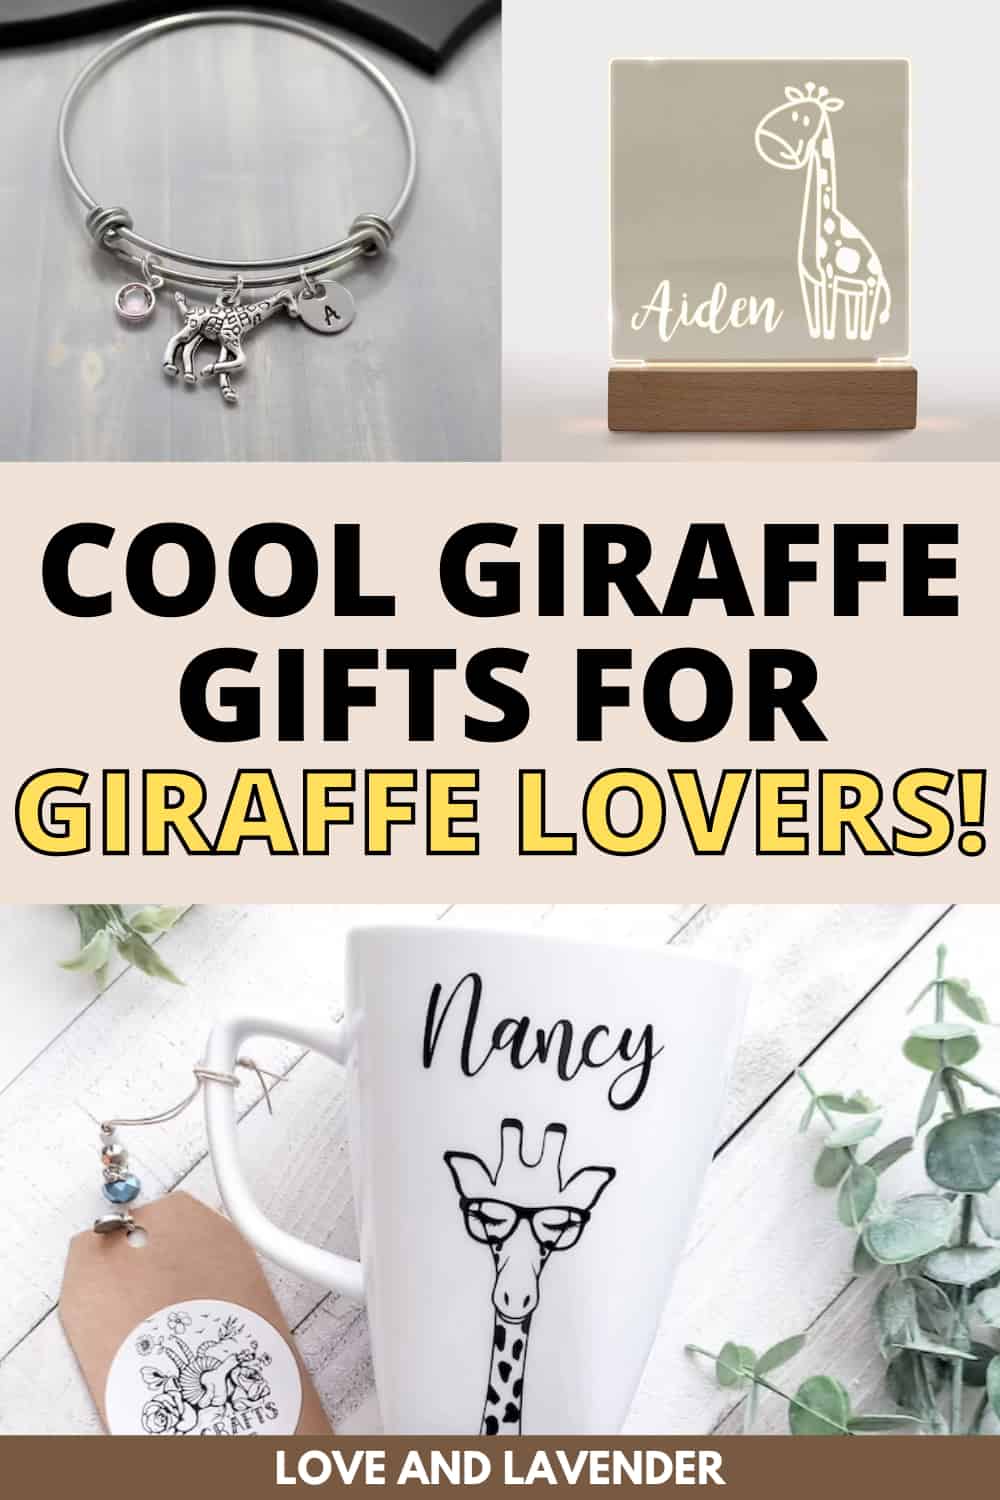 Pinterest pin - gift for giraffe lovers